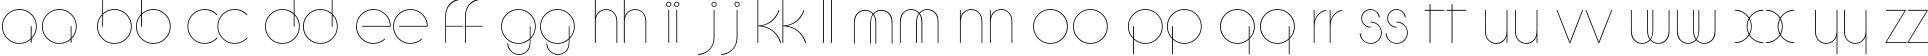 Пример написания английского алфавита шрифтом CircleC